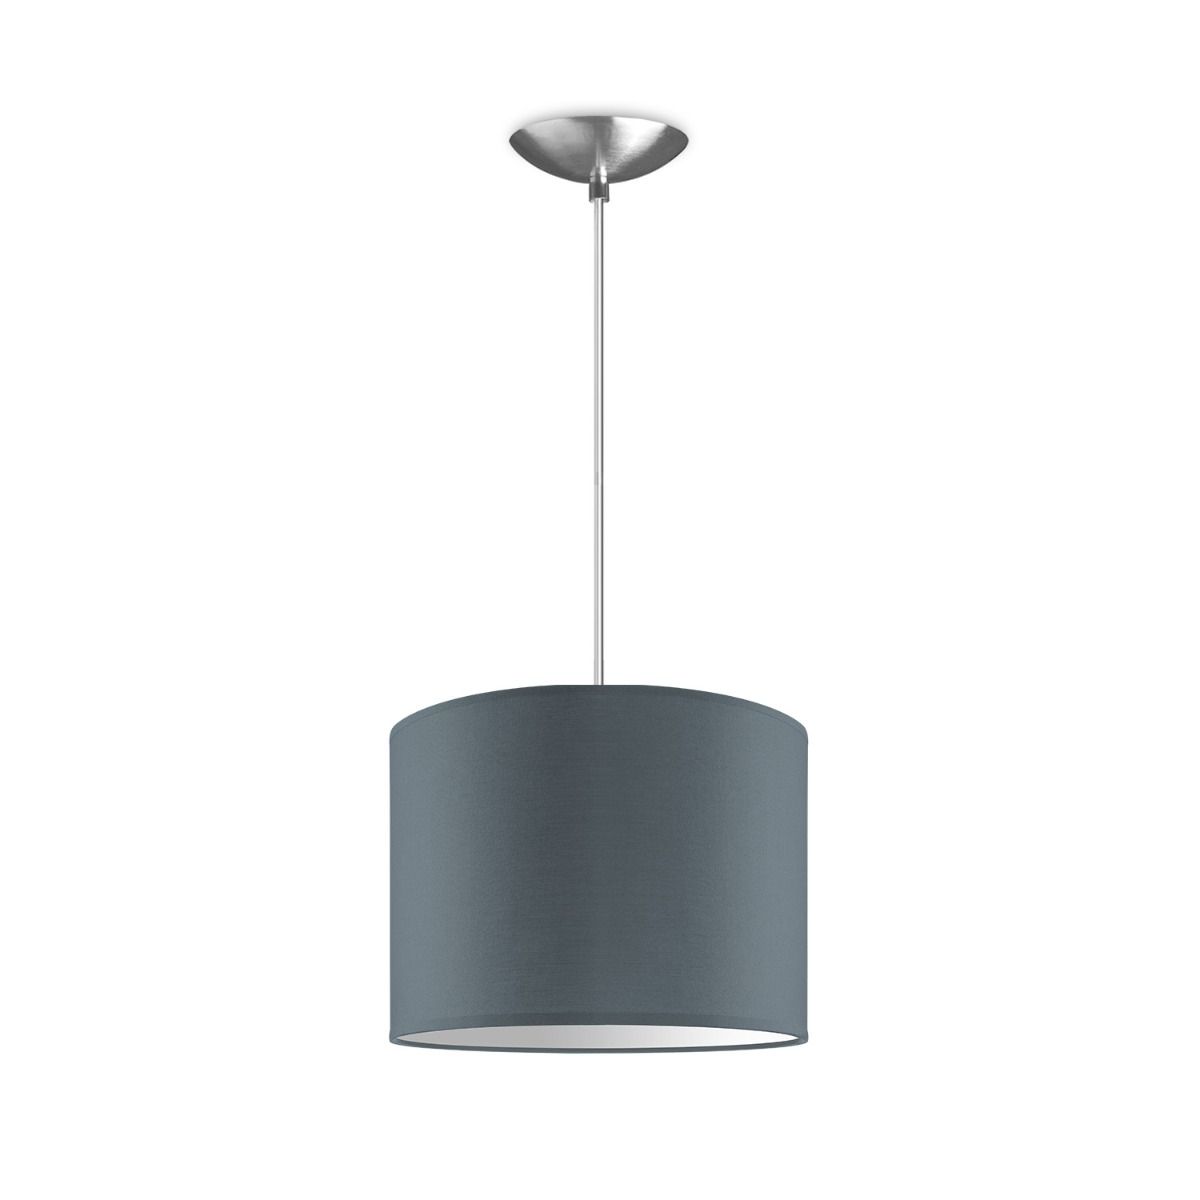 Light depot - hanglamp basic bling Ø 25 cm - lichtgrijs - Outlet